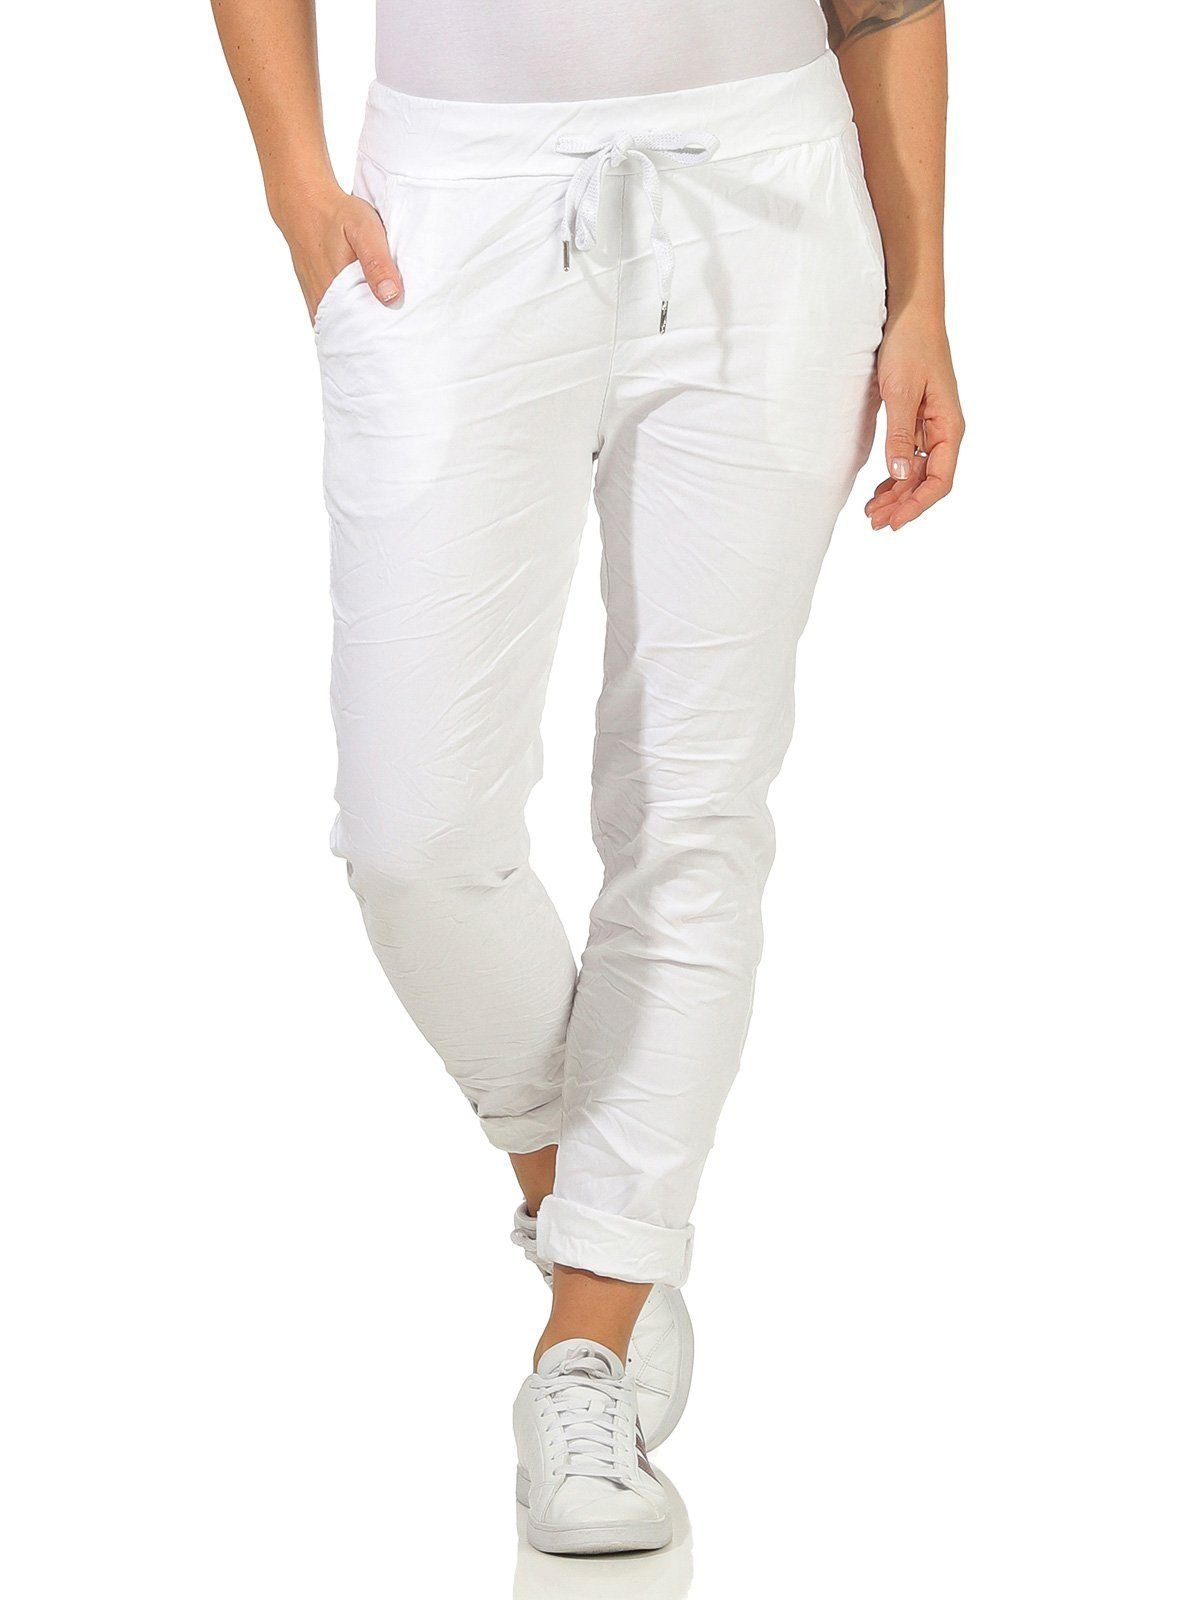 Aurela Damenmode Schlupfhose Sommerhose Damen Chinohose leichte Schlupfhose  auch in großen Größen erhältlich, Stretch-Jeans in modischen Sommerfarben,  max. Körpergröße 1,69m